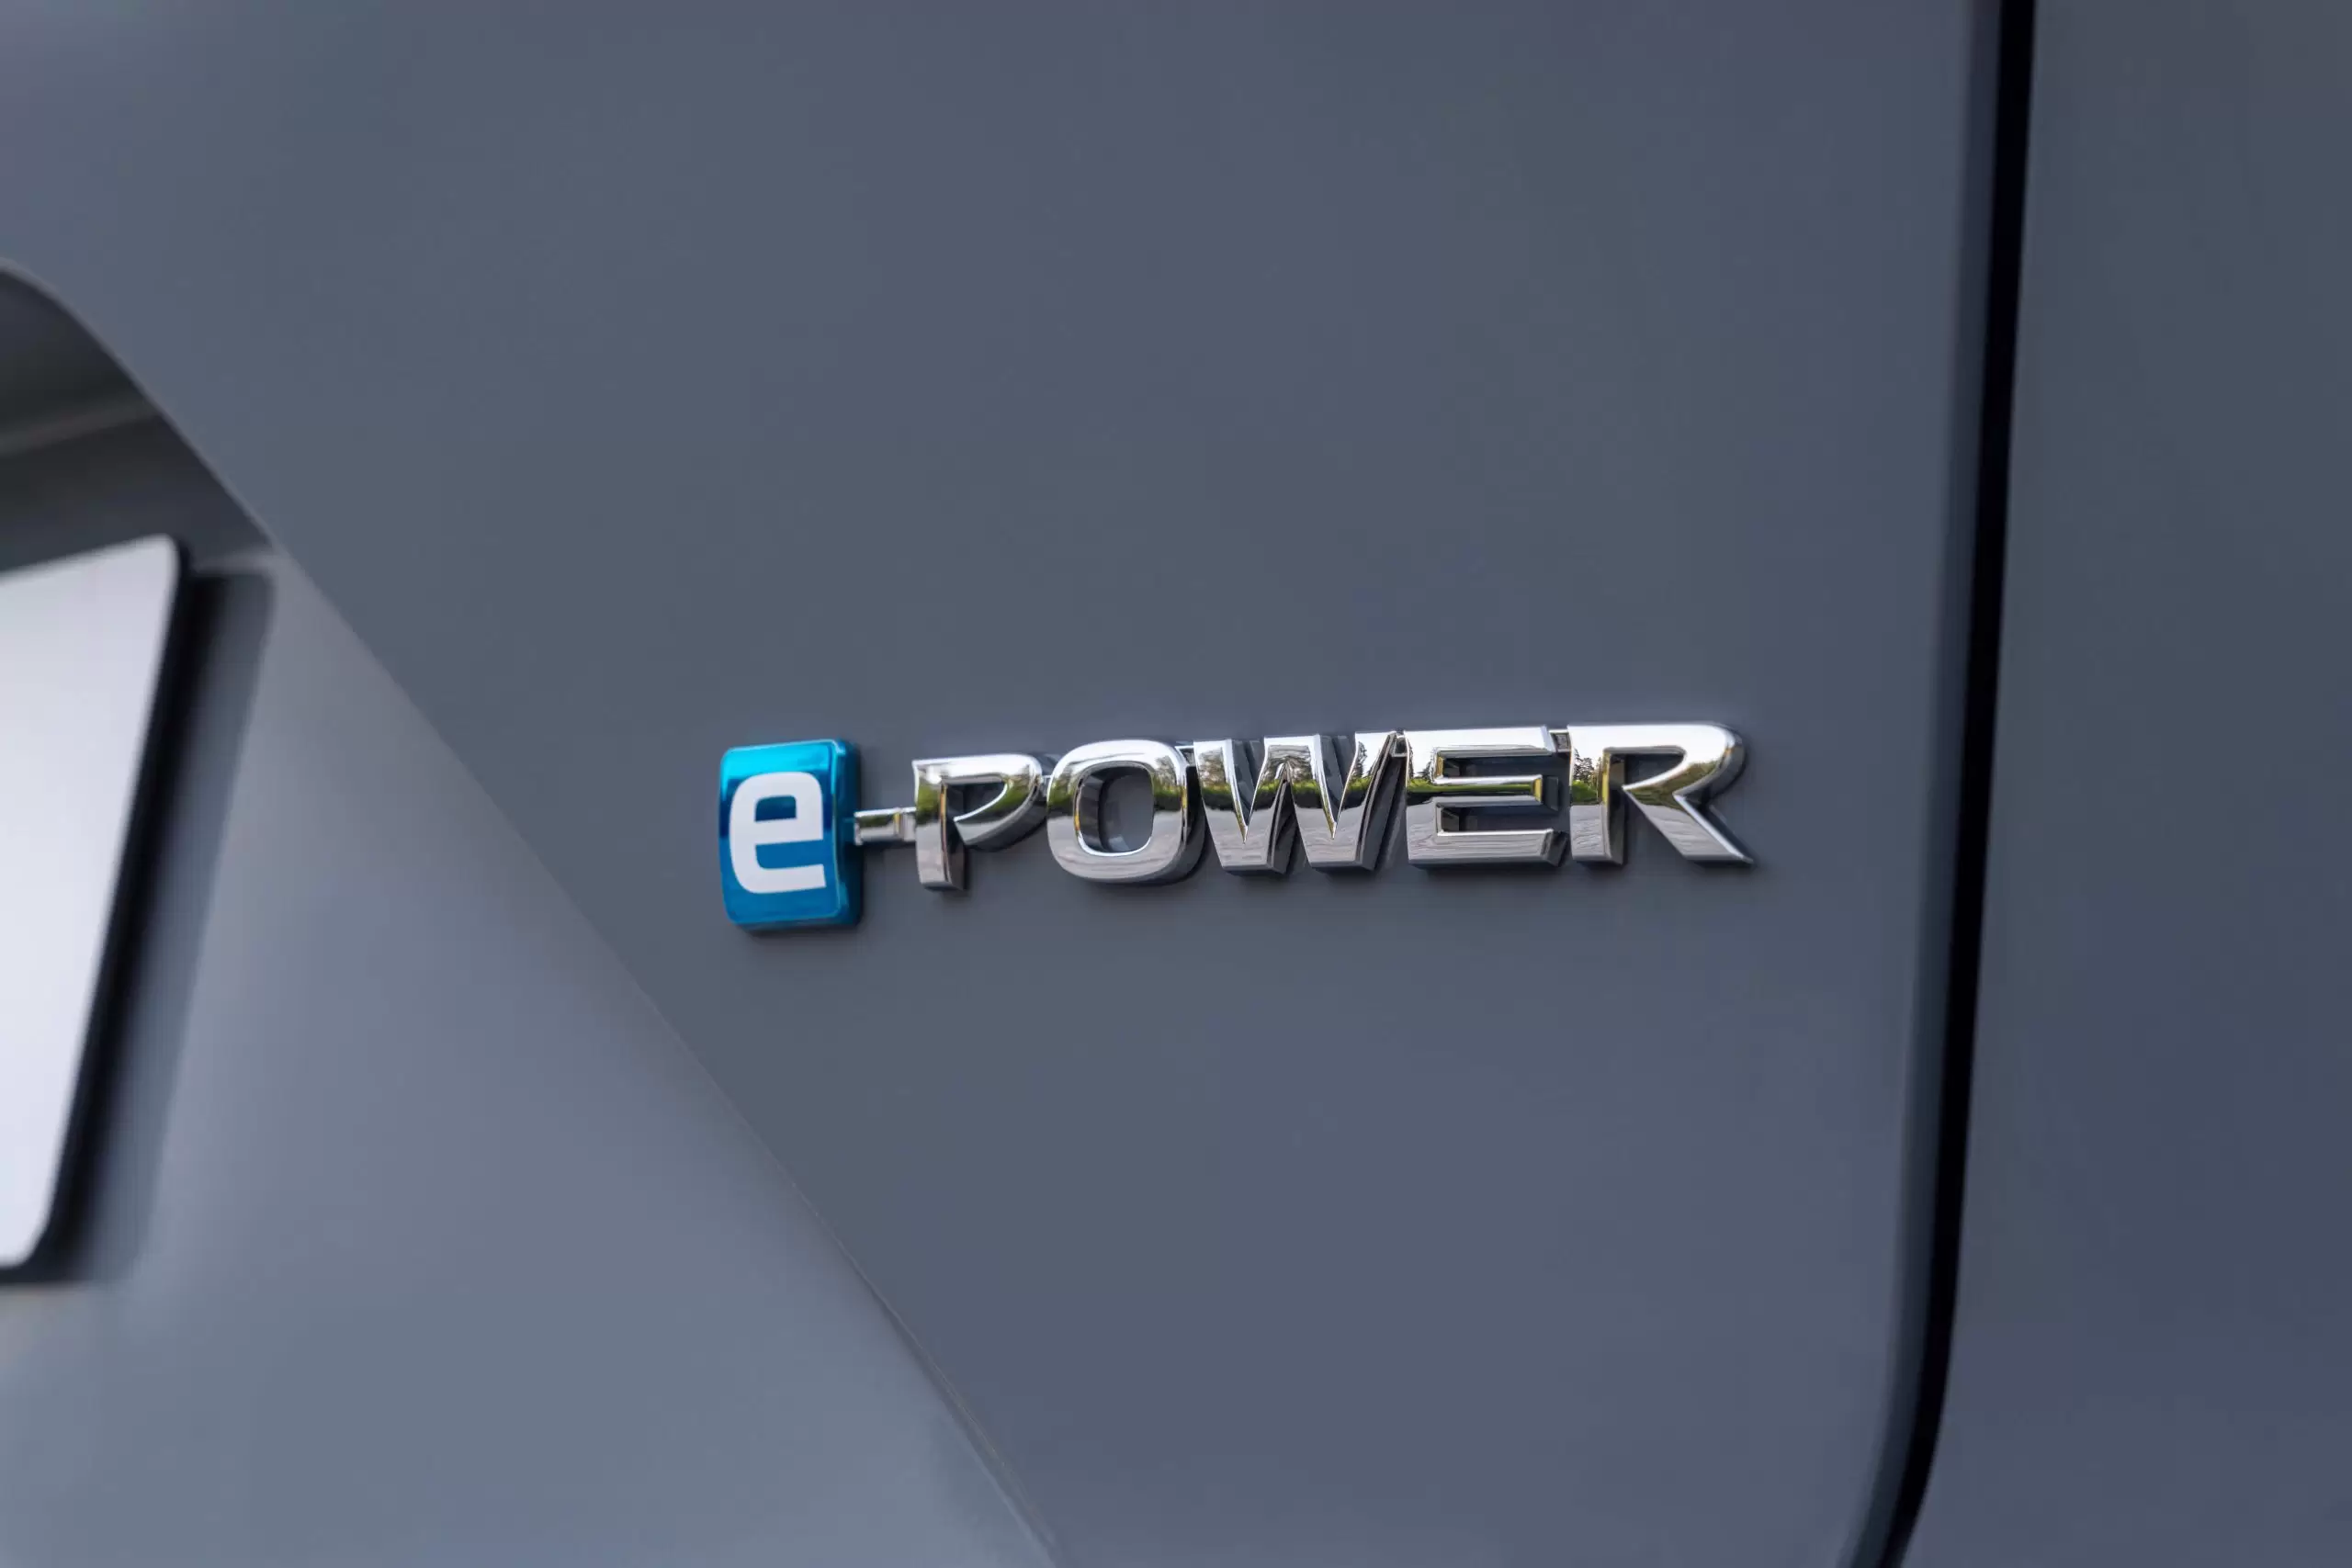 E-POWER: Benzersiz bir Nissan teknolojisi